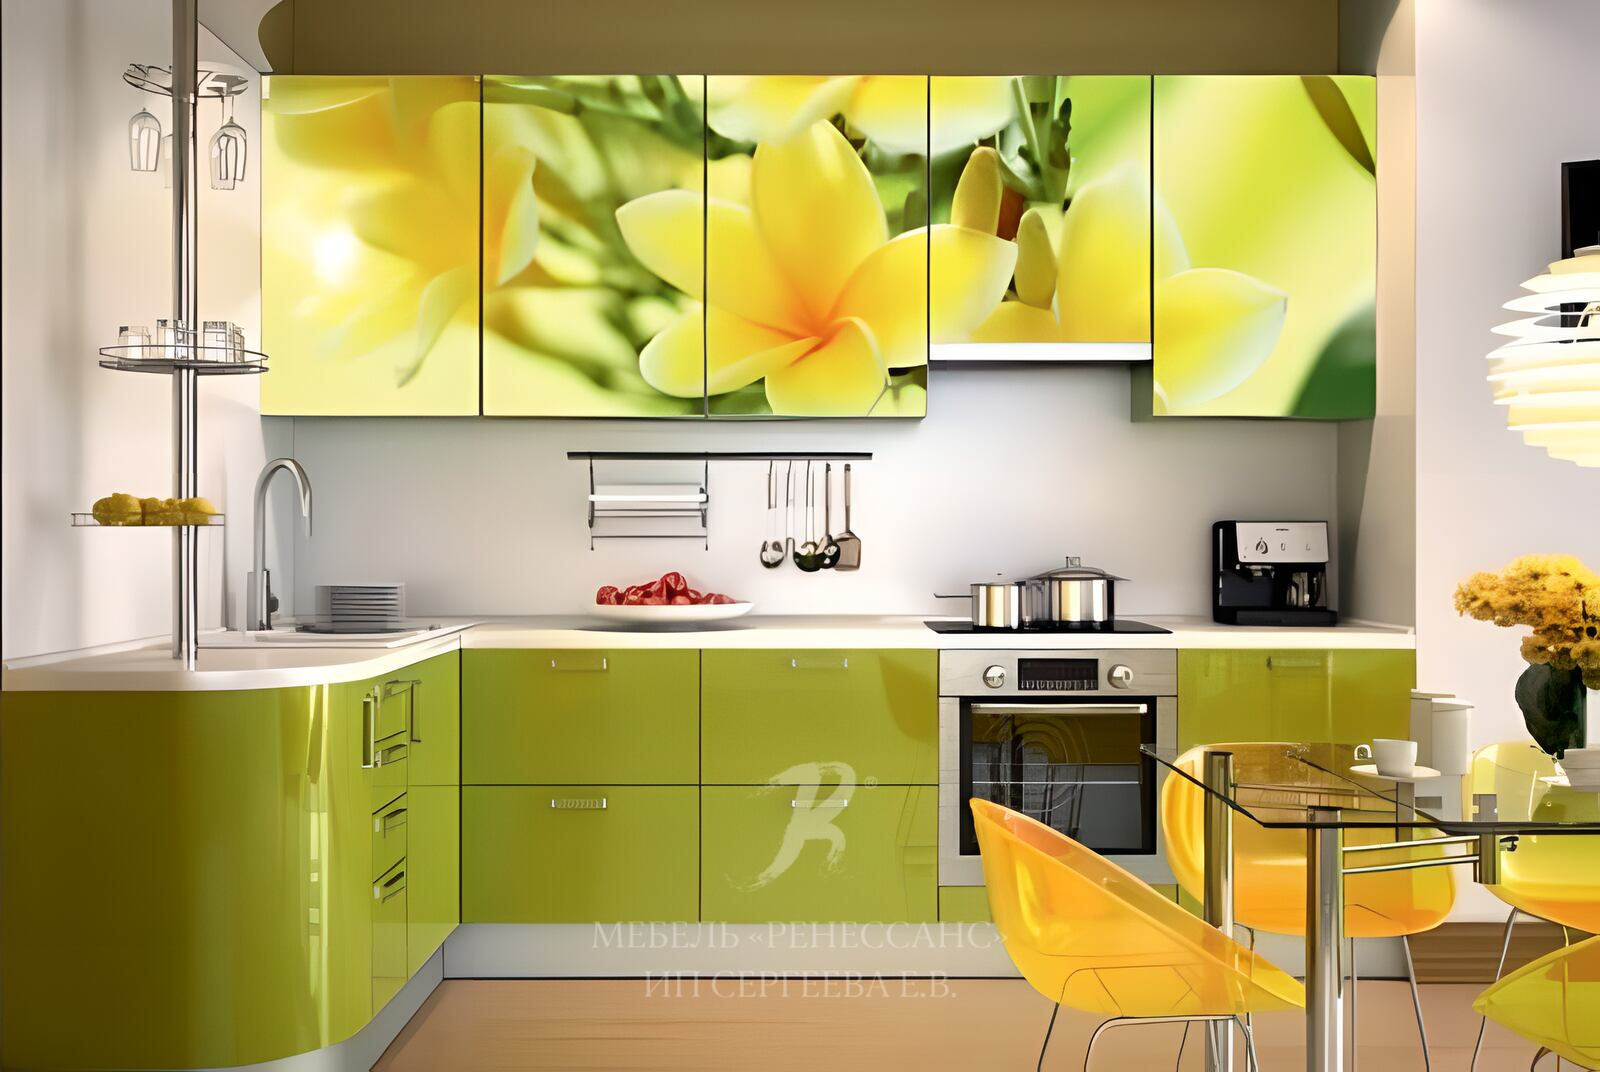 Желто зеленая кухня. Кухня в желто зеленых тонах. Желтый кухонный гарнитур. Кухни с фотопринтом.